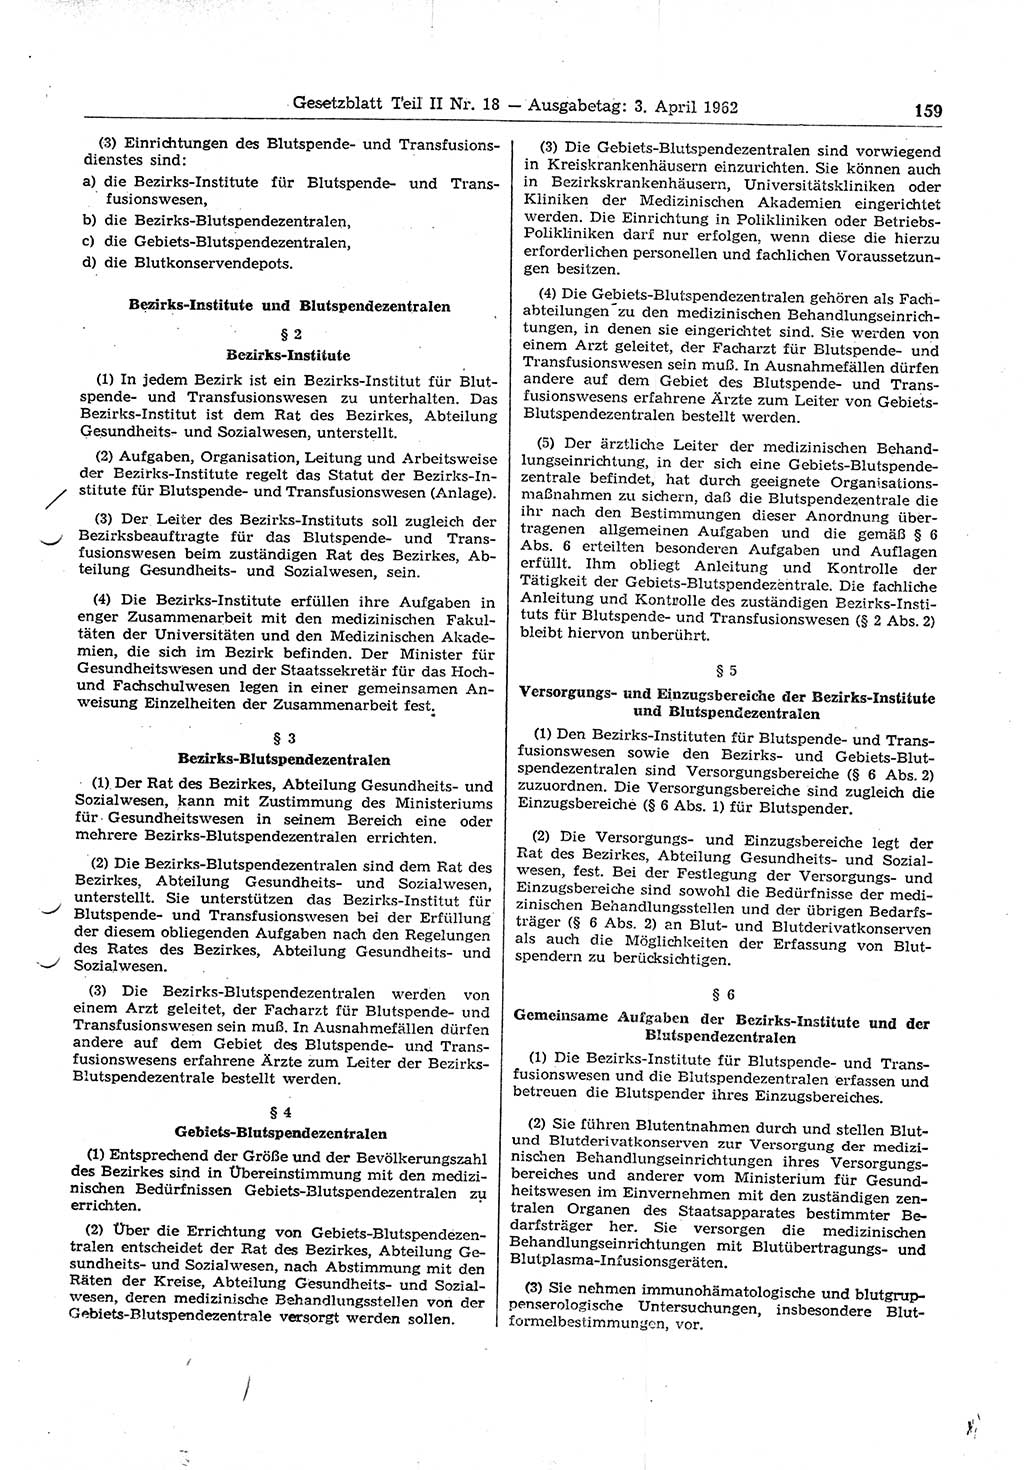 Gesetzblatt (GBl.) der Deutschen Demokratischen Republik (DDR) Teil ⅠⅠ 1962, Seite 159 (GBl. DDR ⅠⅠ 1962, S. 159)